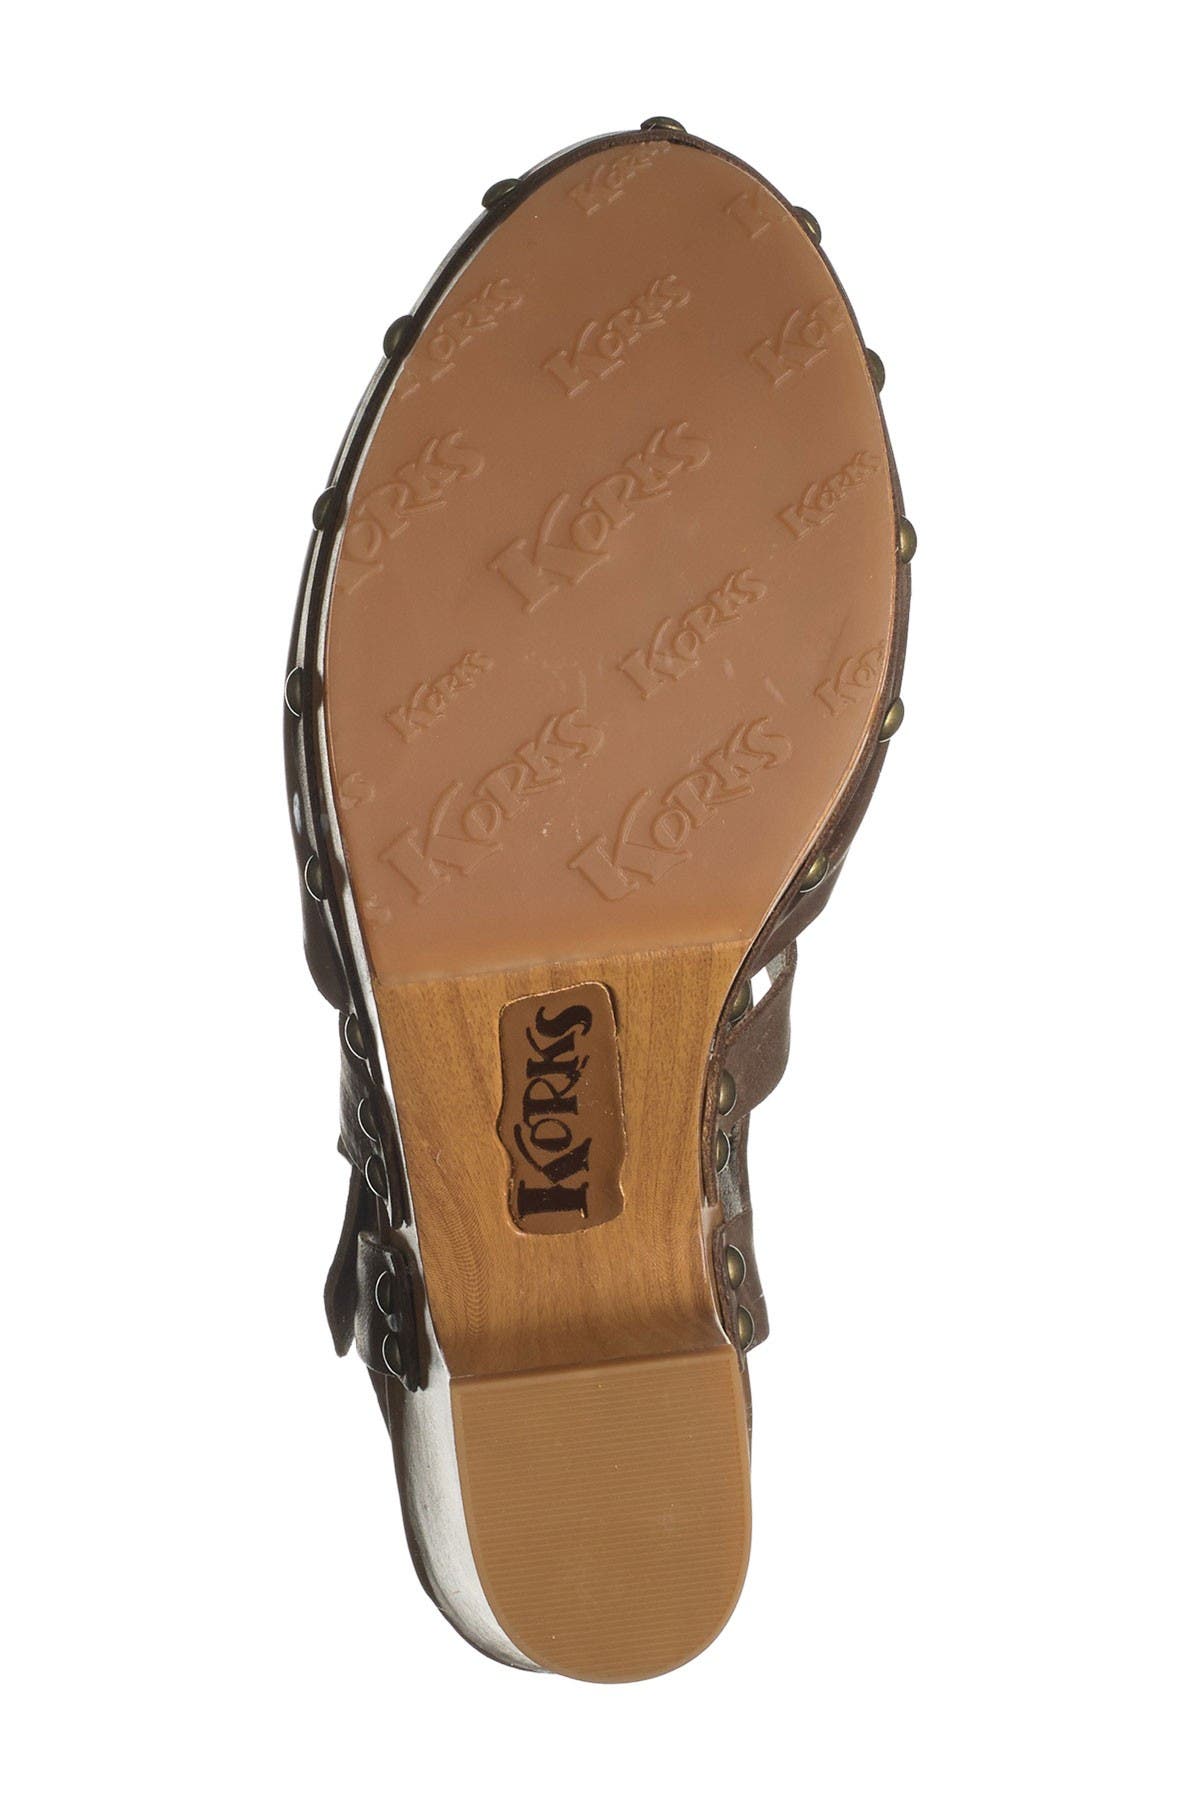 abloom slingback clog sandal